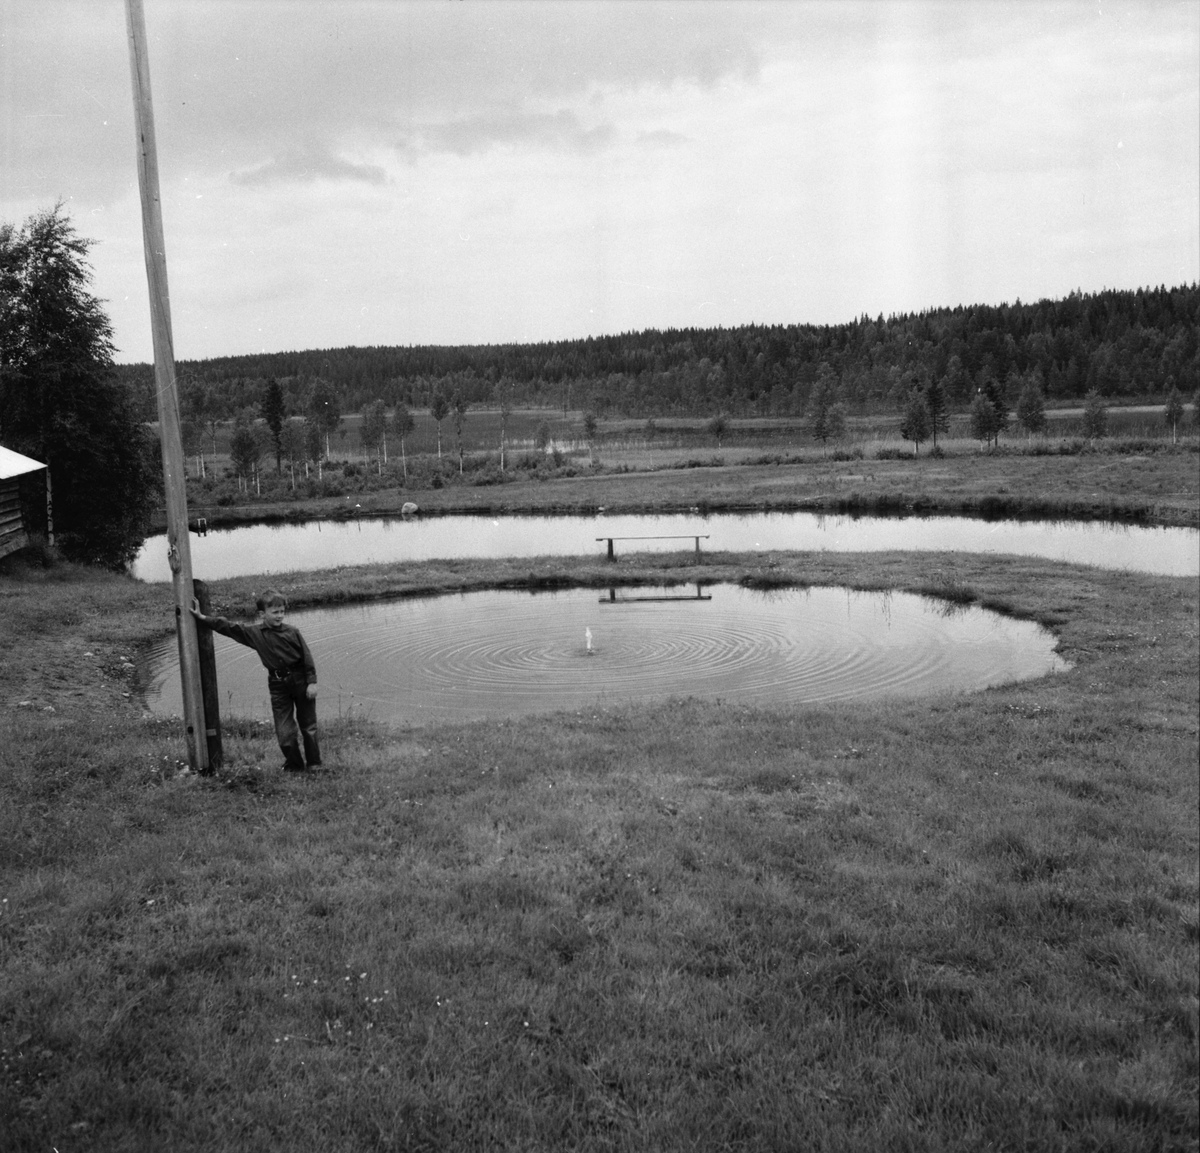 Hänsätter. Resa till Skoglunds torp.
Arbrå 25/6 1963